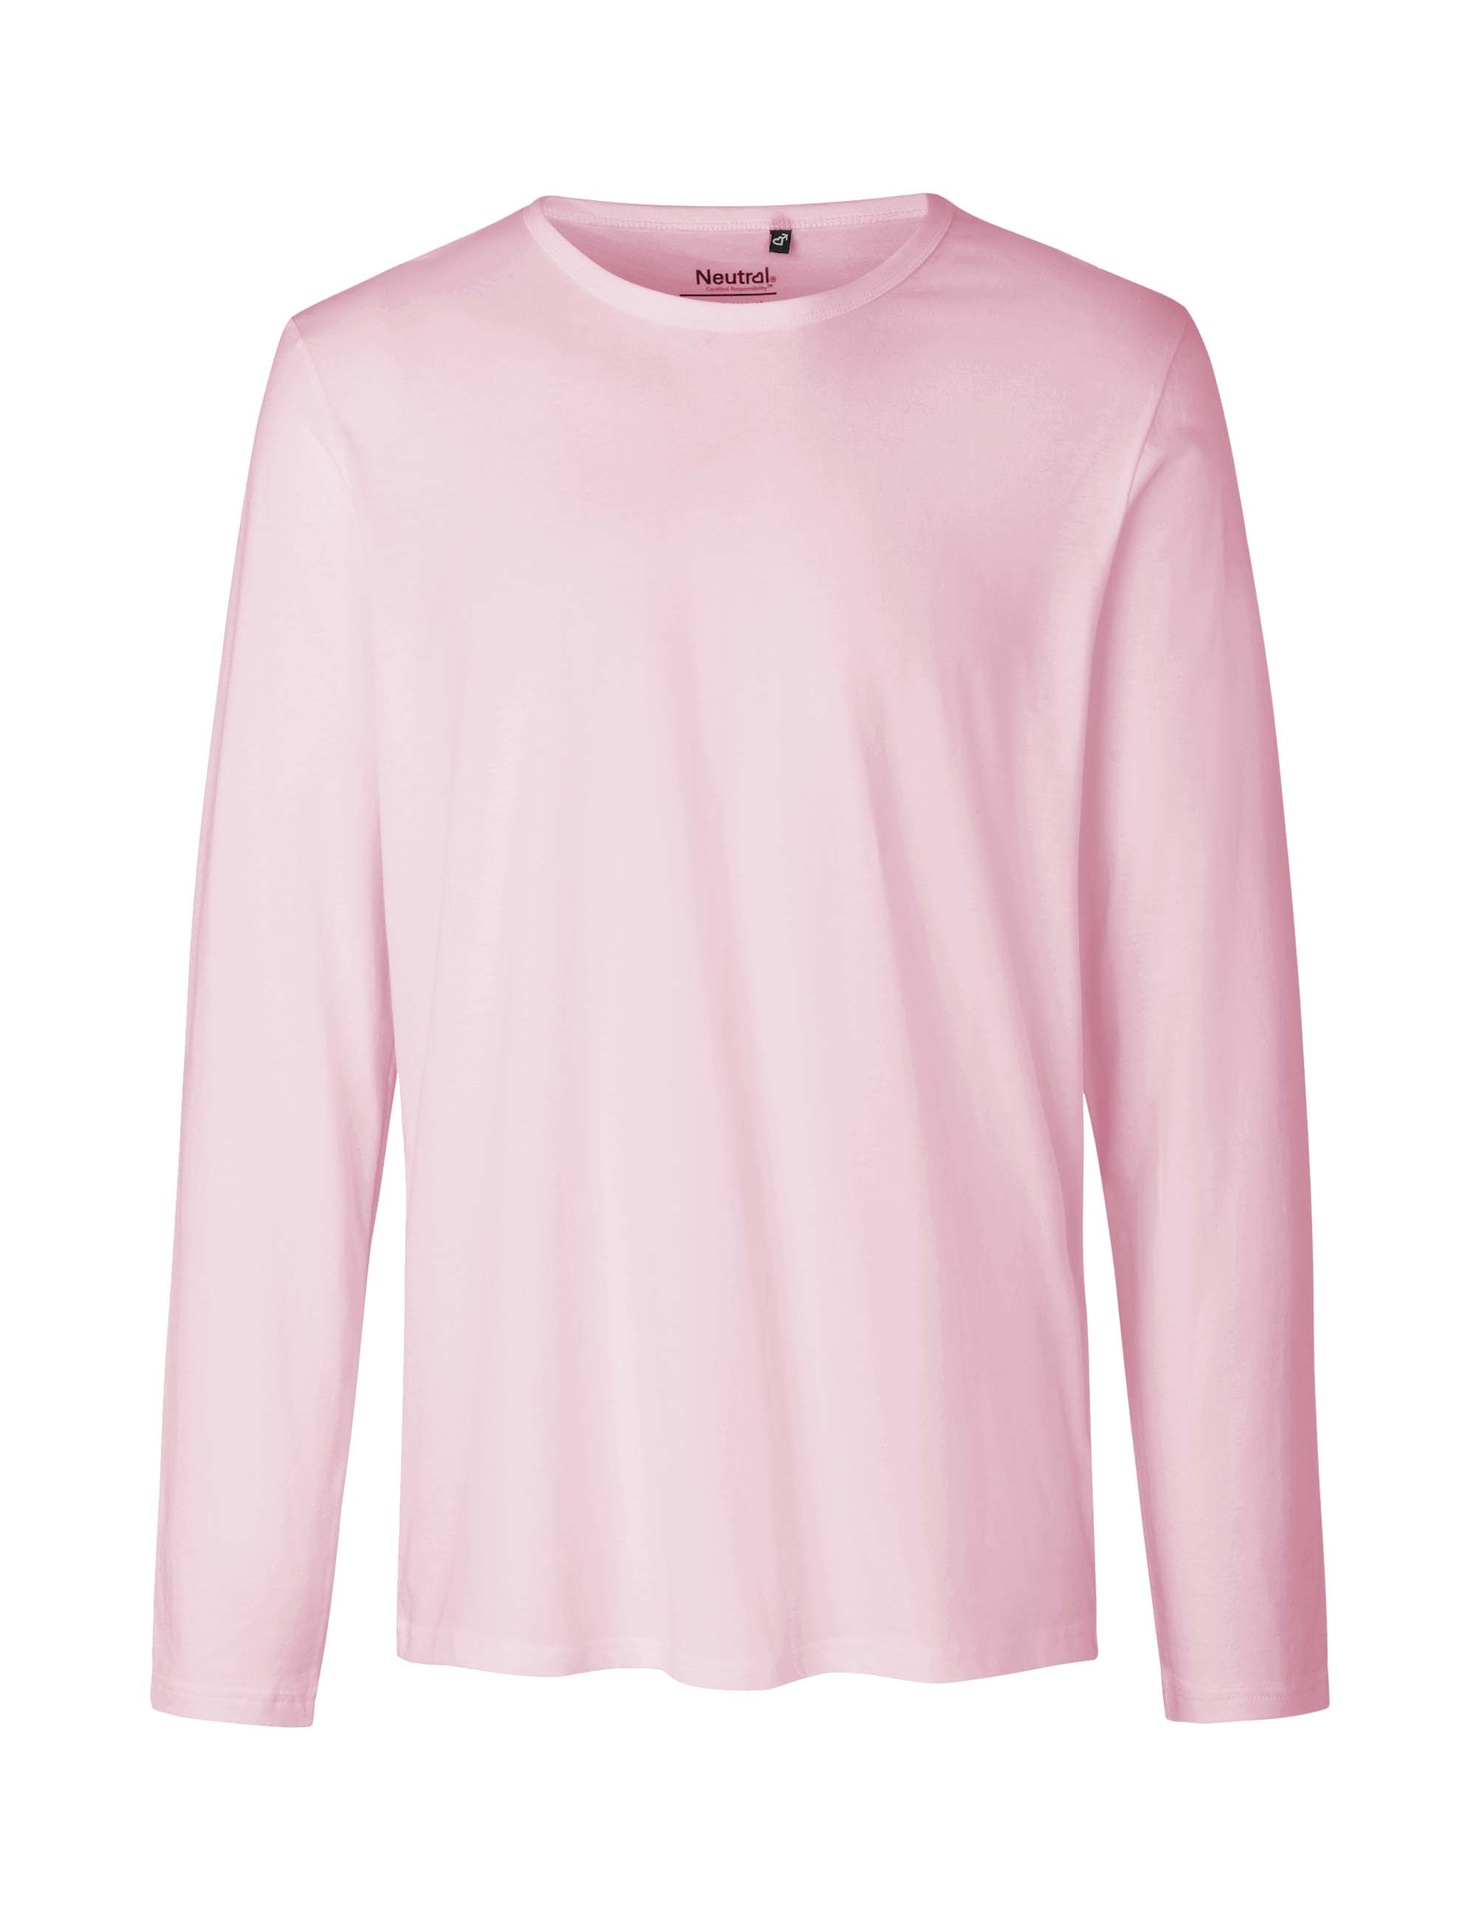 [PR/02395] Mens Long Sleeve T-Shirt (Light Pink 20, XL)